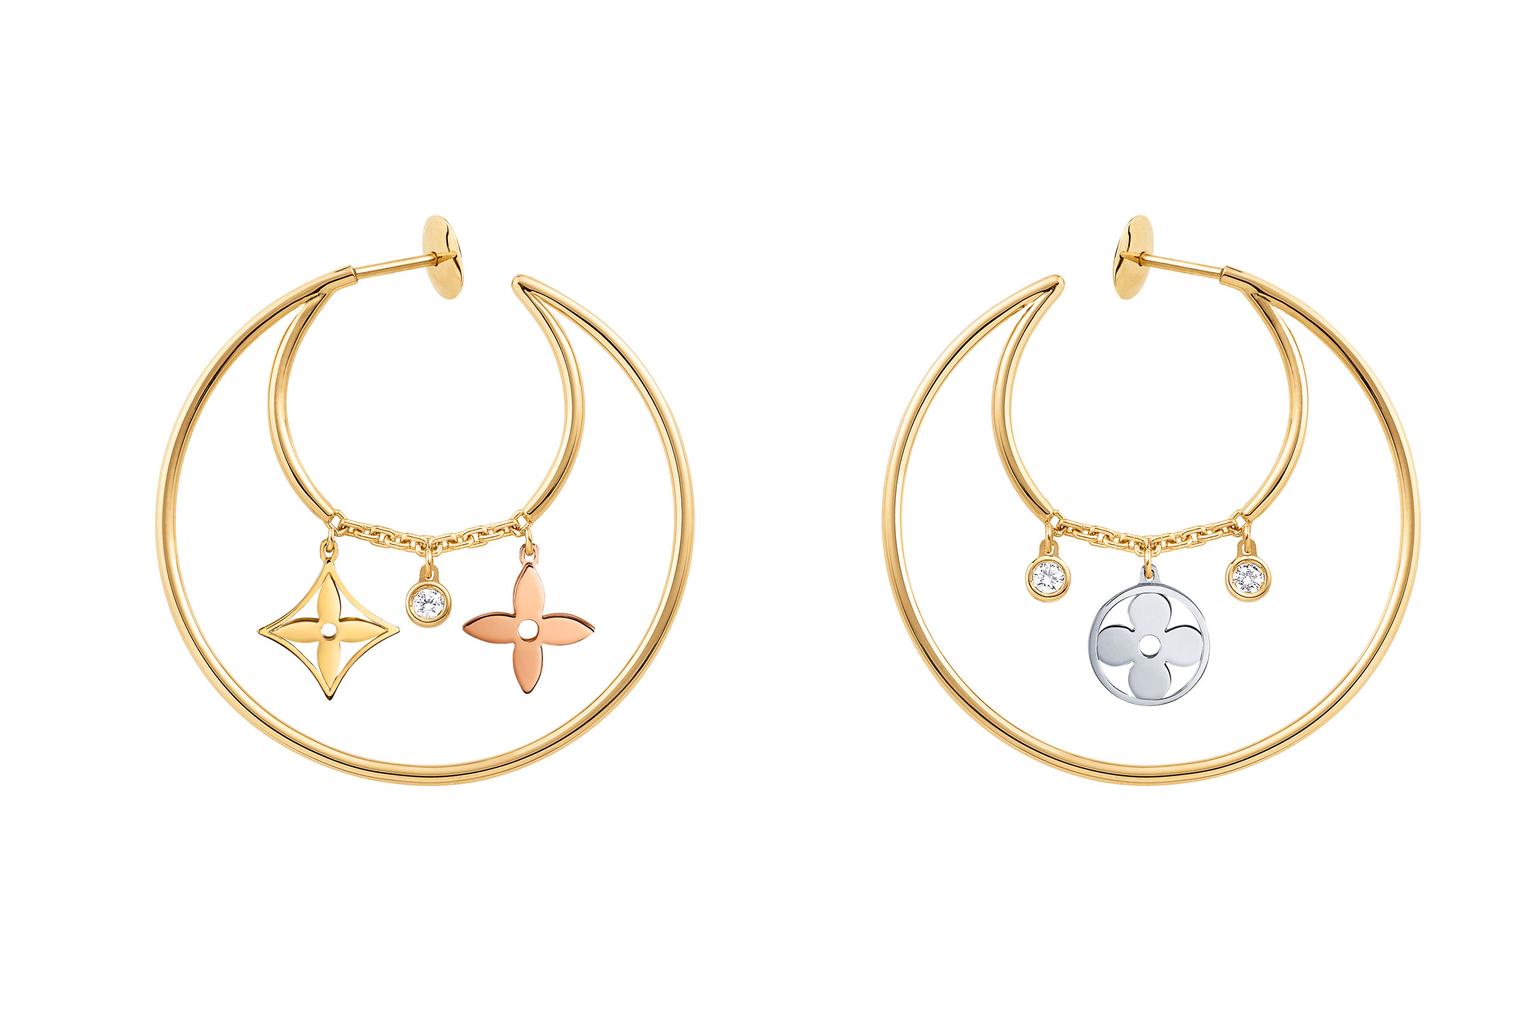 Dentelle de Monogram diamond earrings in white gold